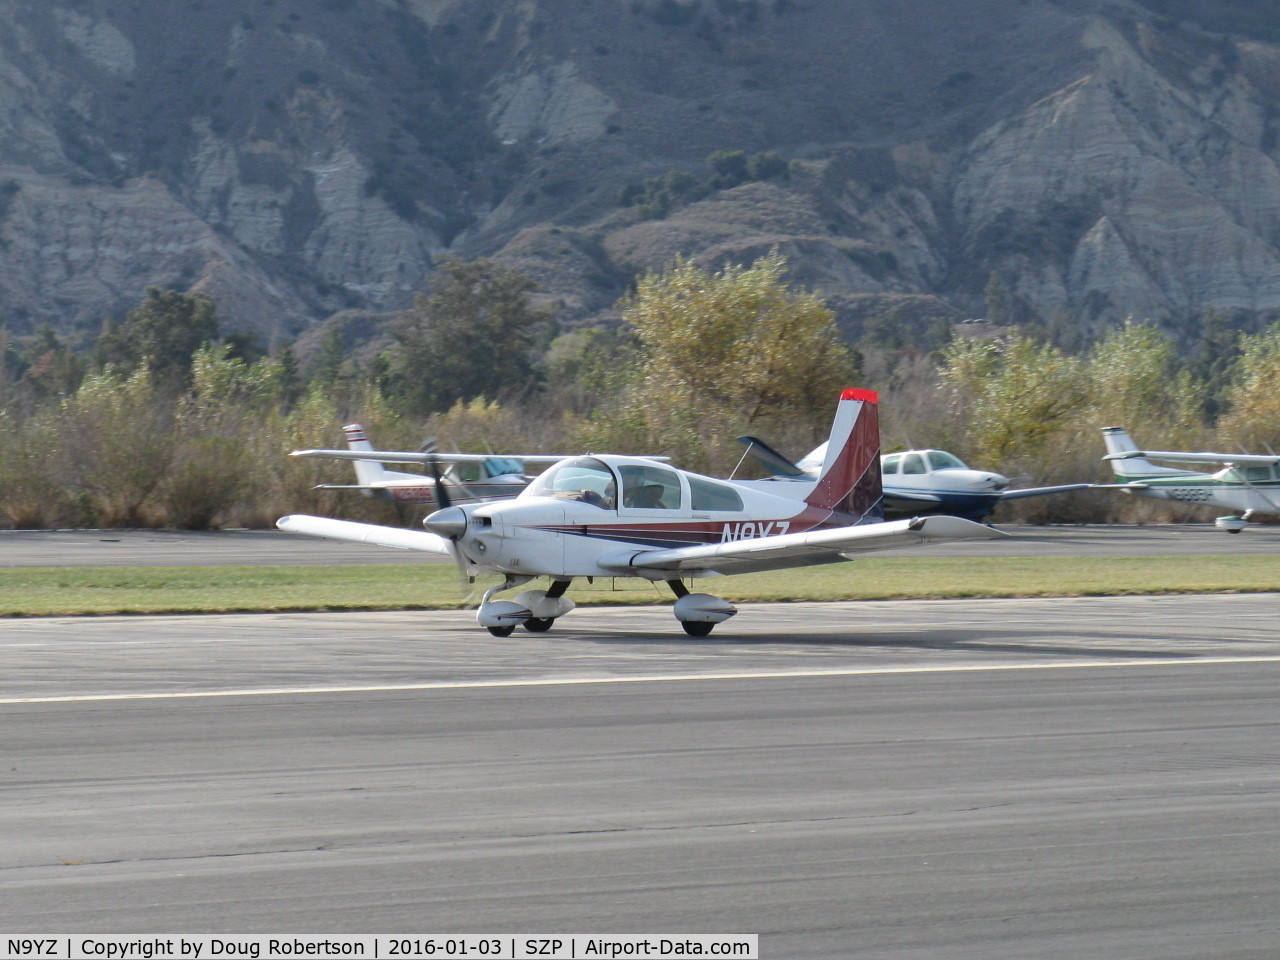 N9YZ, 1975 Grumman American AA-5A Cheetah C/N AA5-0822, 1975 Grumman American AA-5A CHEETAH, Lycoming O-320 150 Hp, landing roll Rwy 04 to give Young Eagles flights